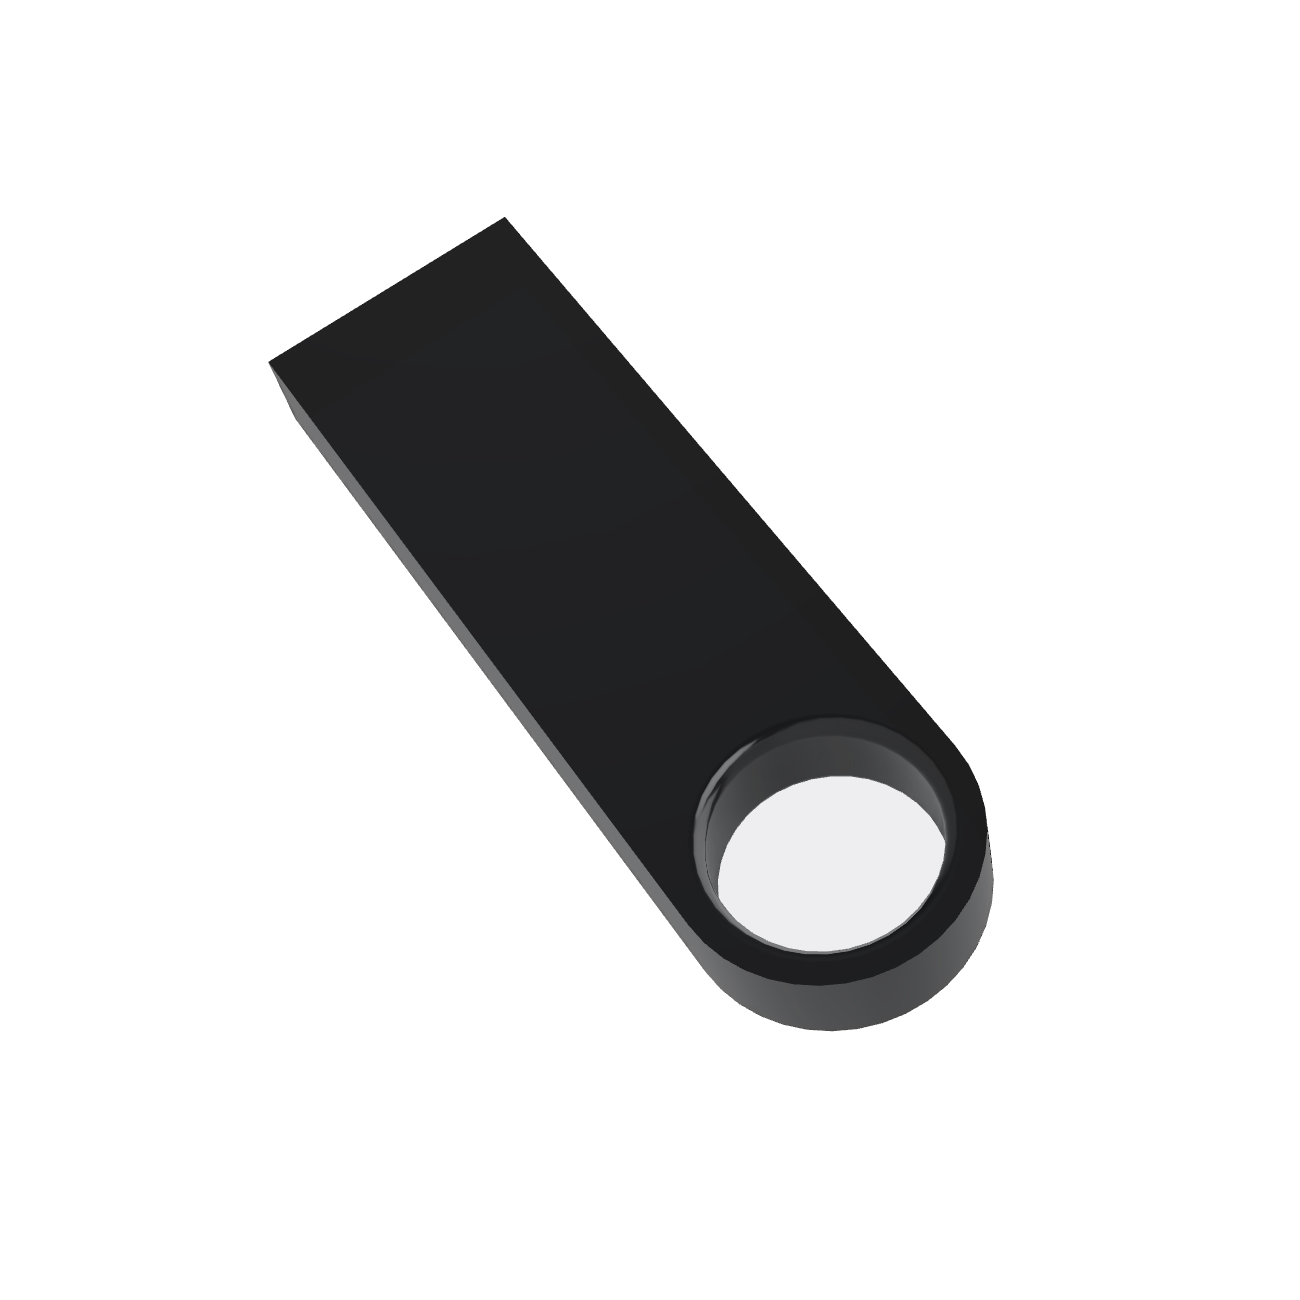 USB GERMANY ® SE09 USB-Stick (Schwarz, 64 GB)